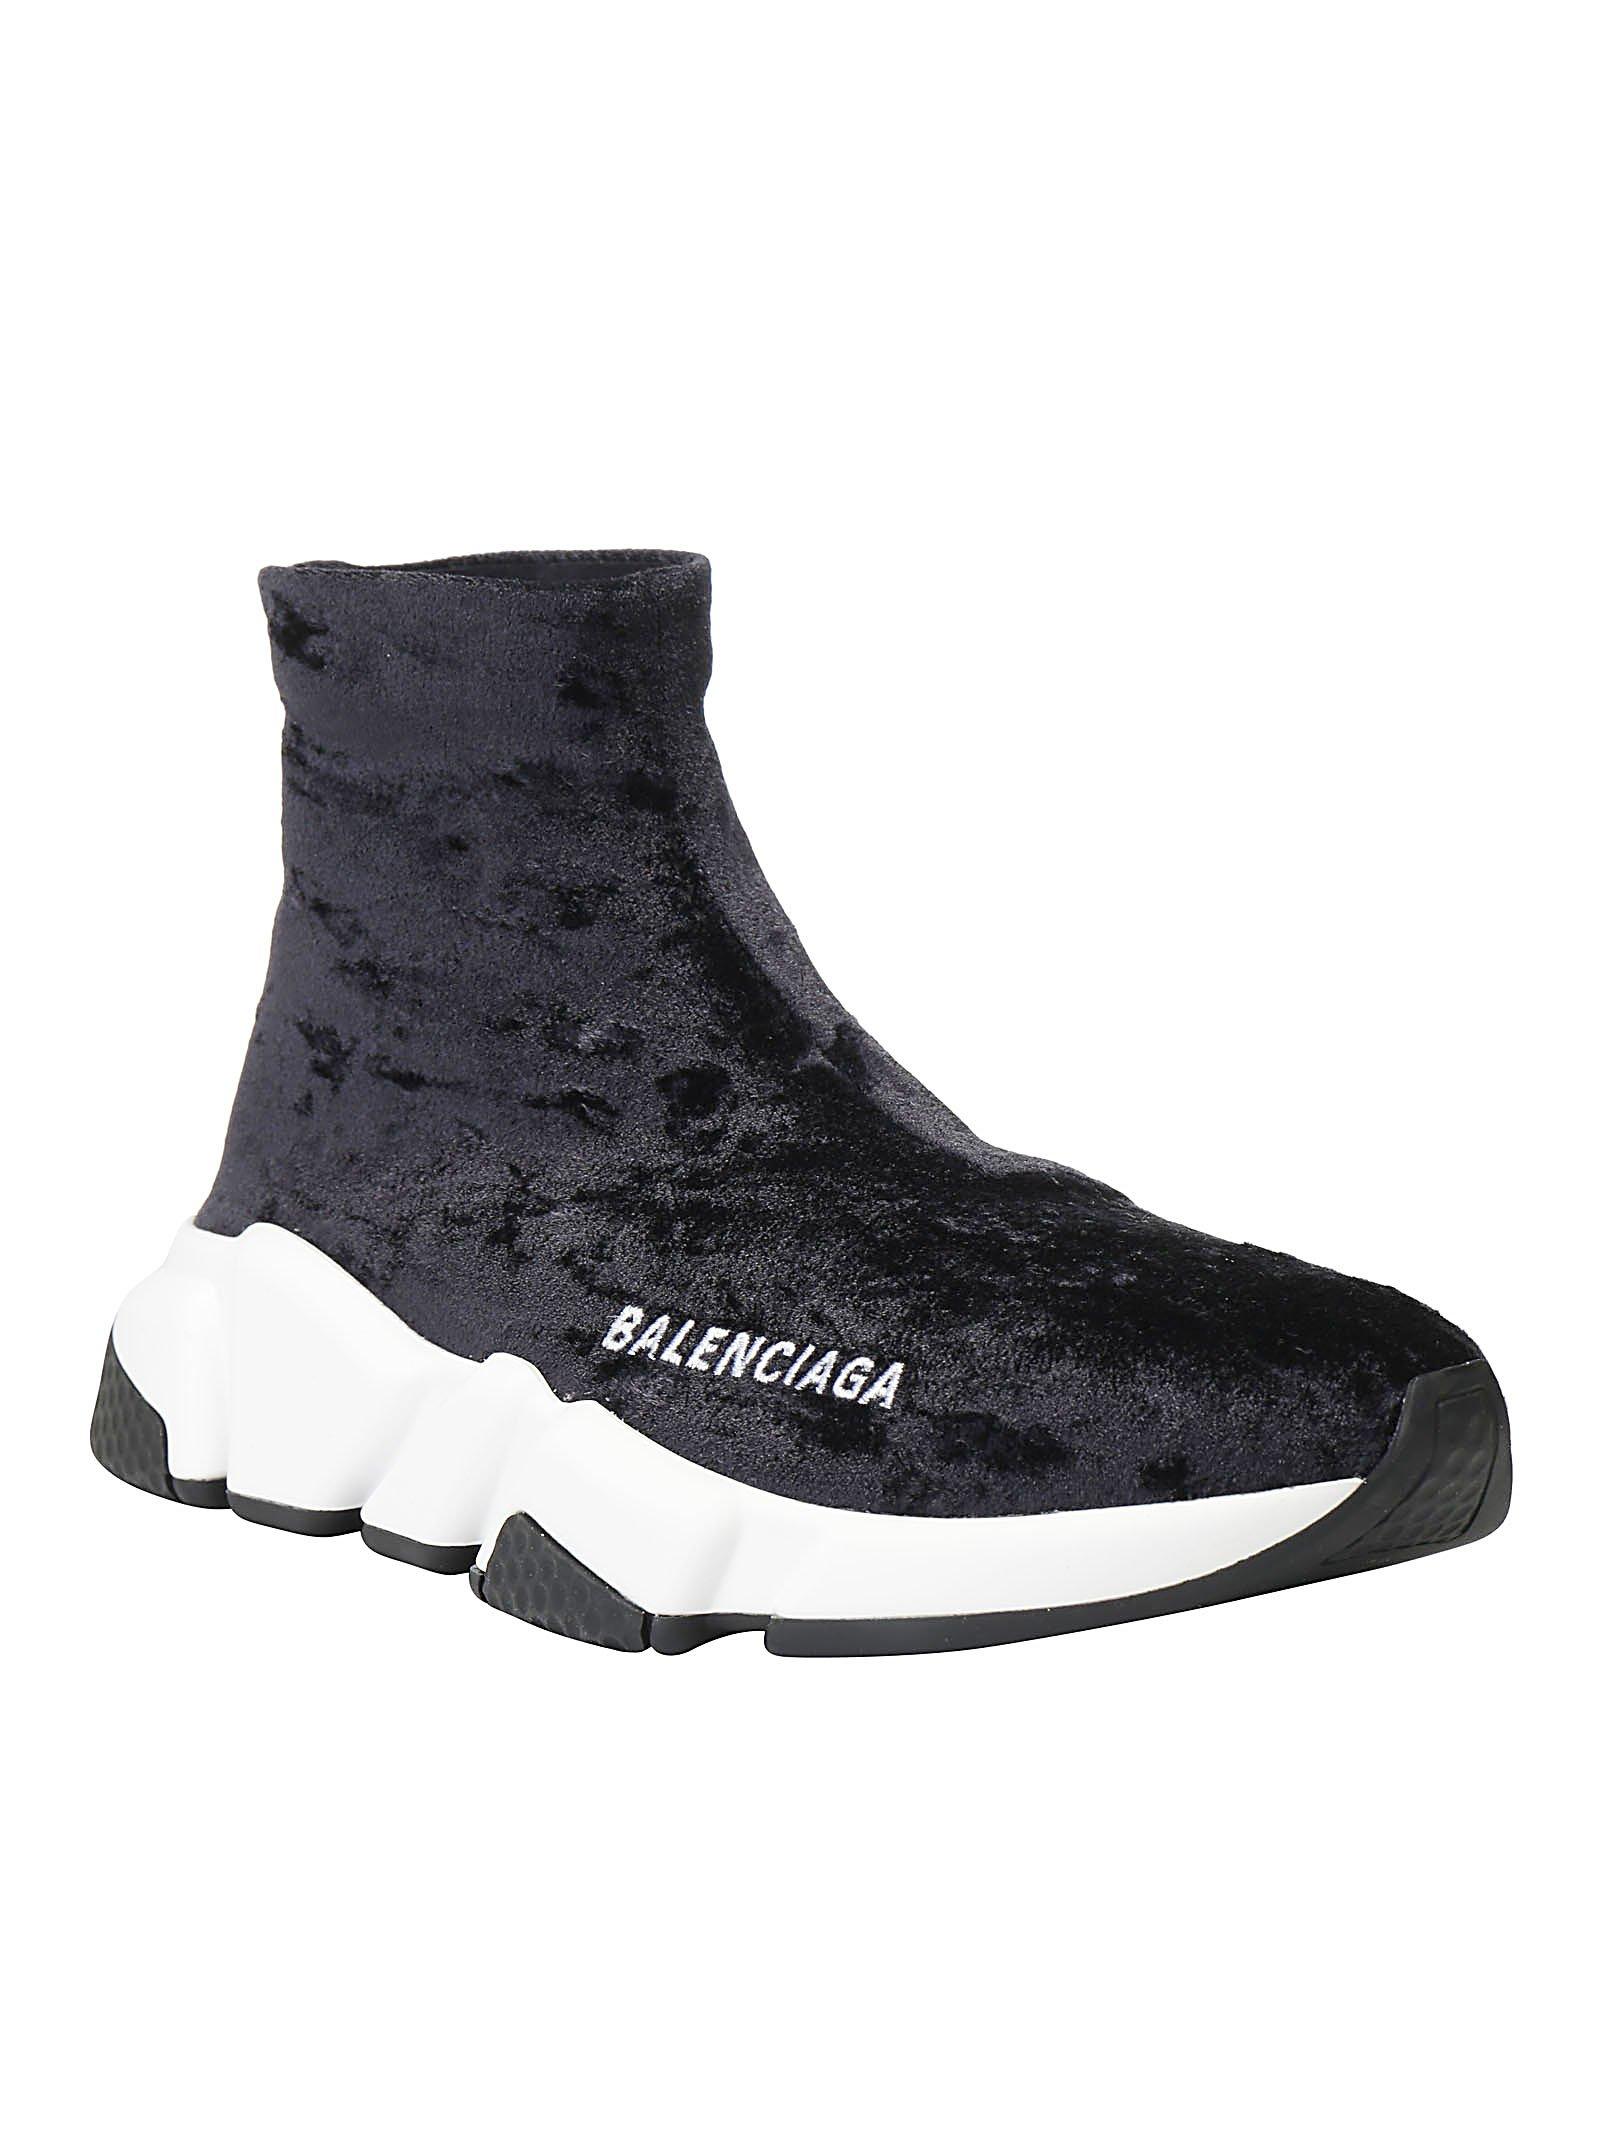 Balenciaga Speed Slip-on Velvet Sneakers in Black - Lyst